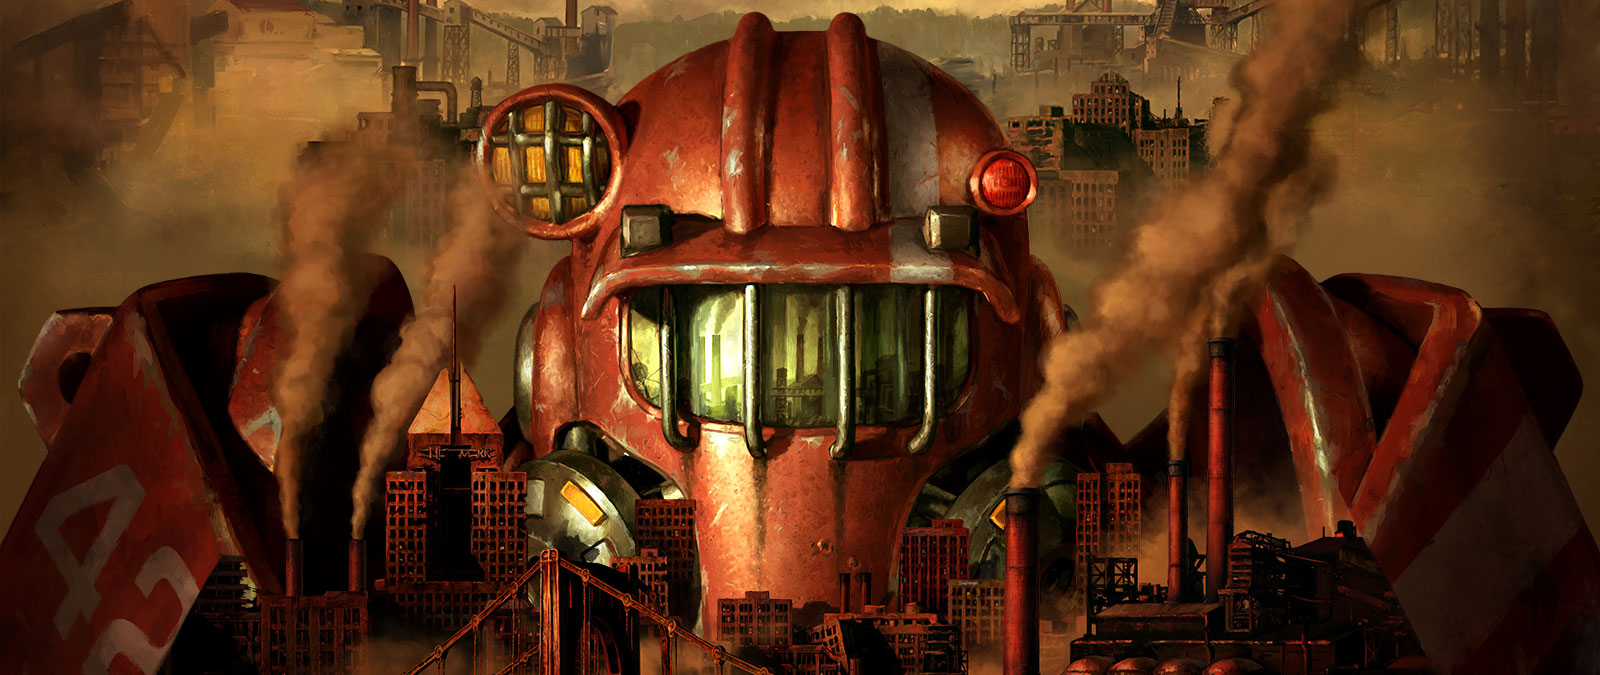 A Power Armor egyik figurája feltűnik a Pitt szennyezett látóhatára fölött.